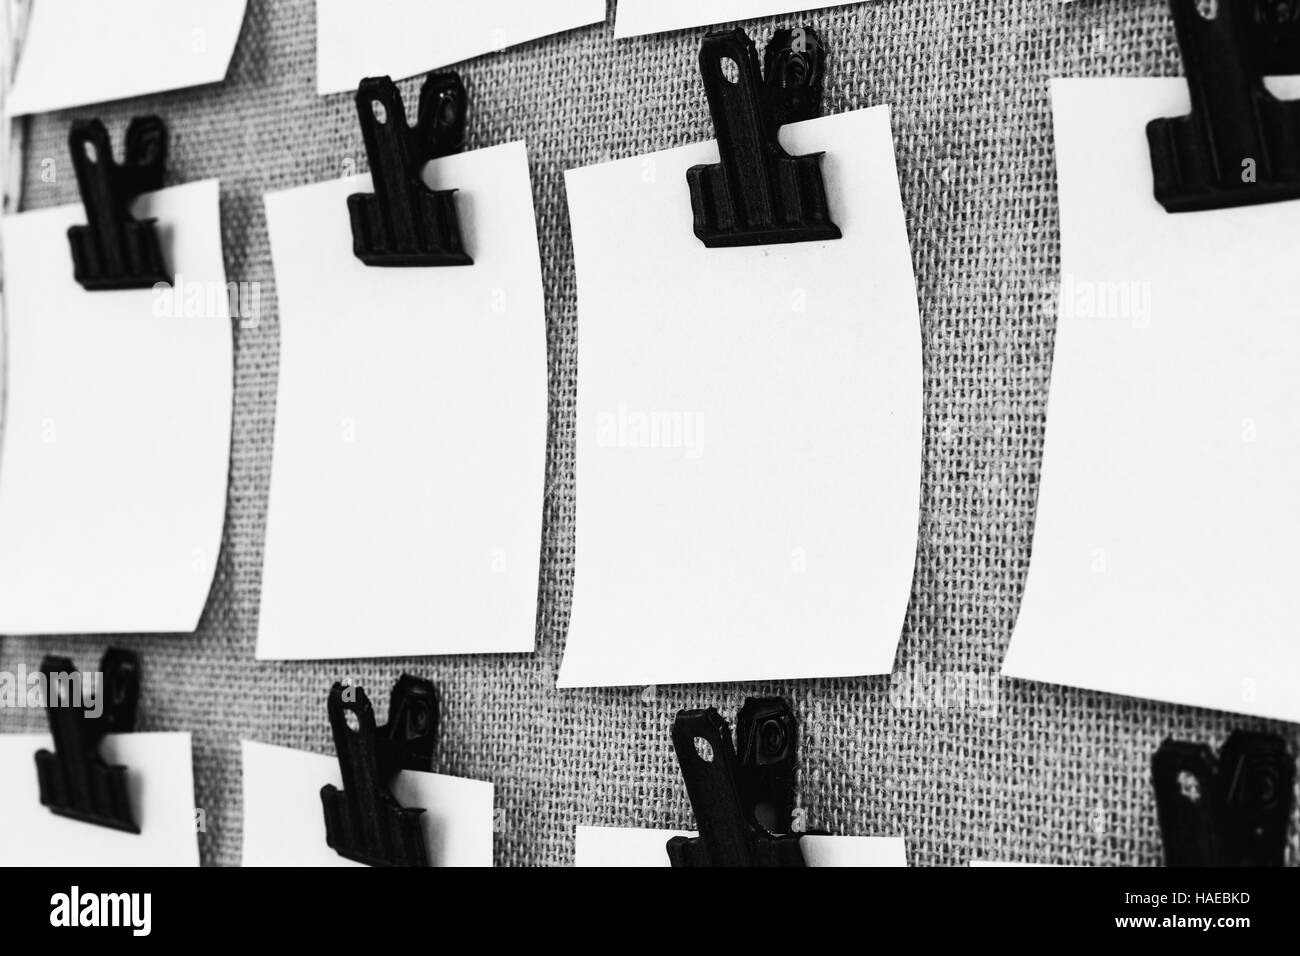 Affichage avec clips holding blank notes papier carré près. Vue sous un angle en noir et blanc Banque D'Images